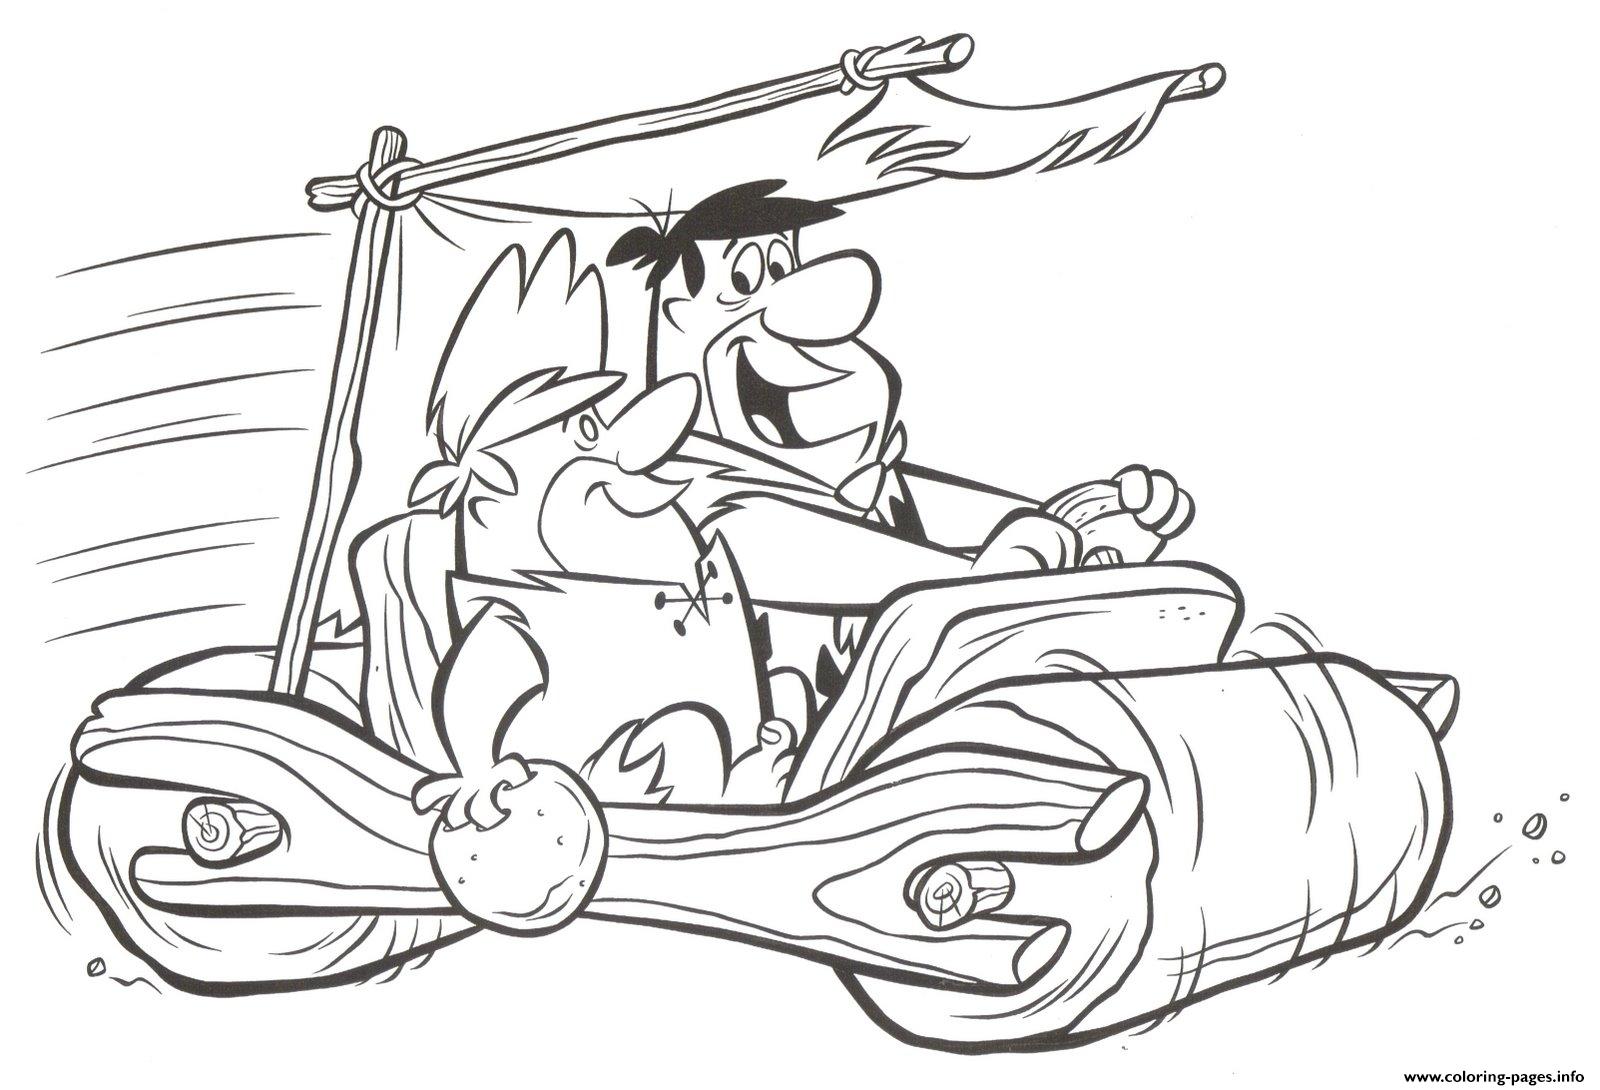 Flintstones S Vehiclee68c coloring